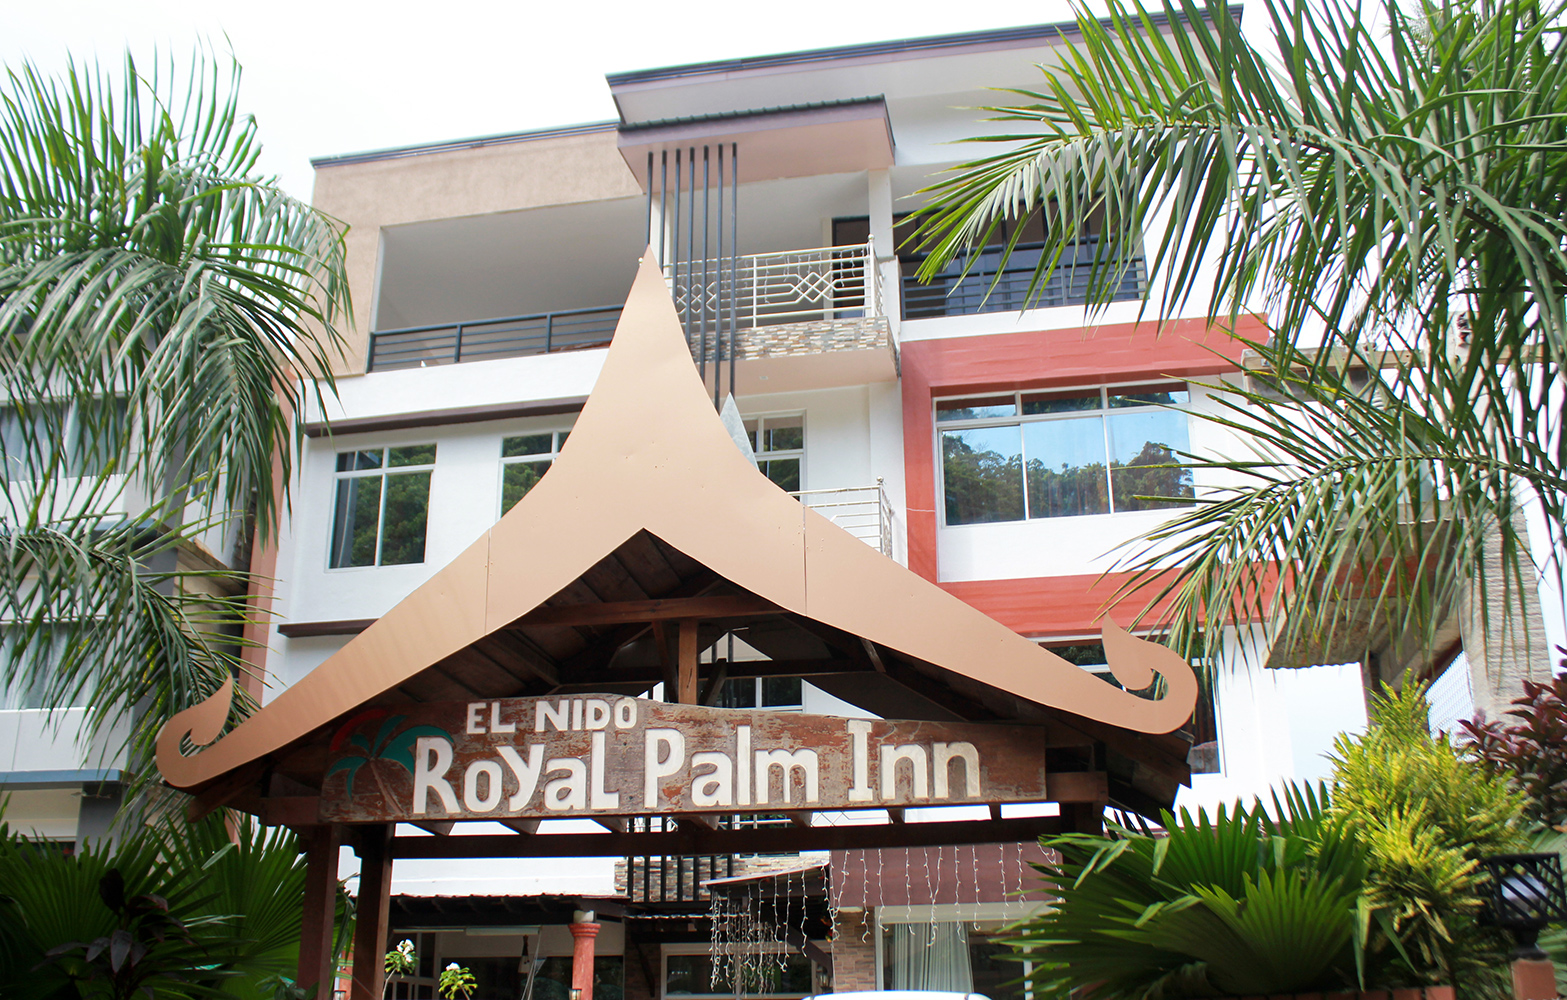 El Nido Royal Palm Inn Front view